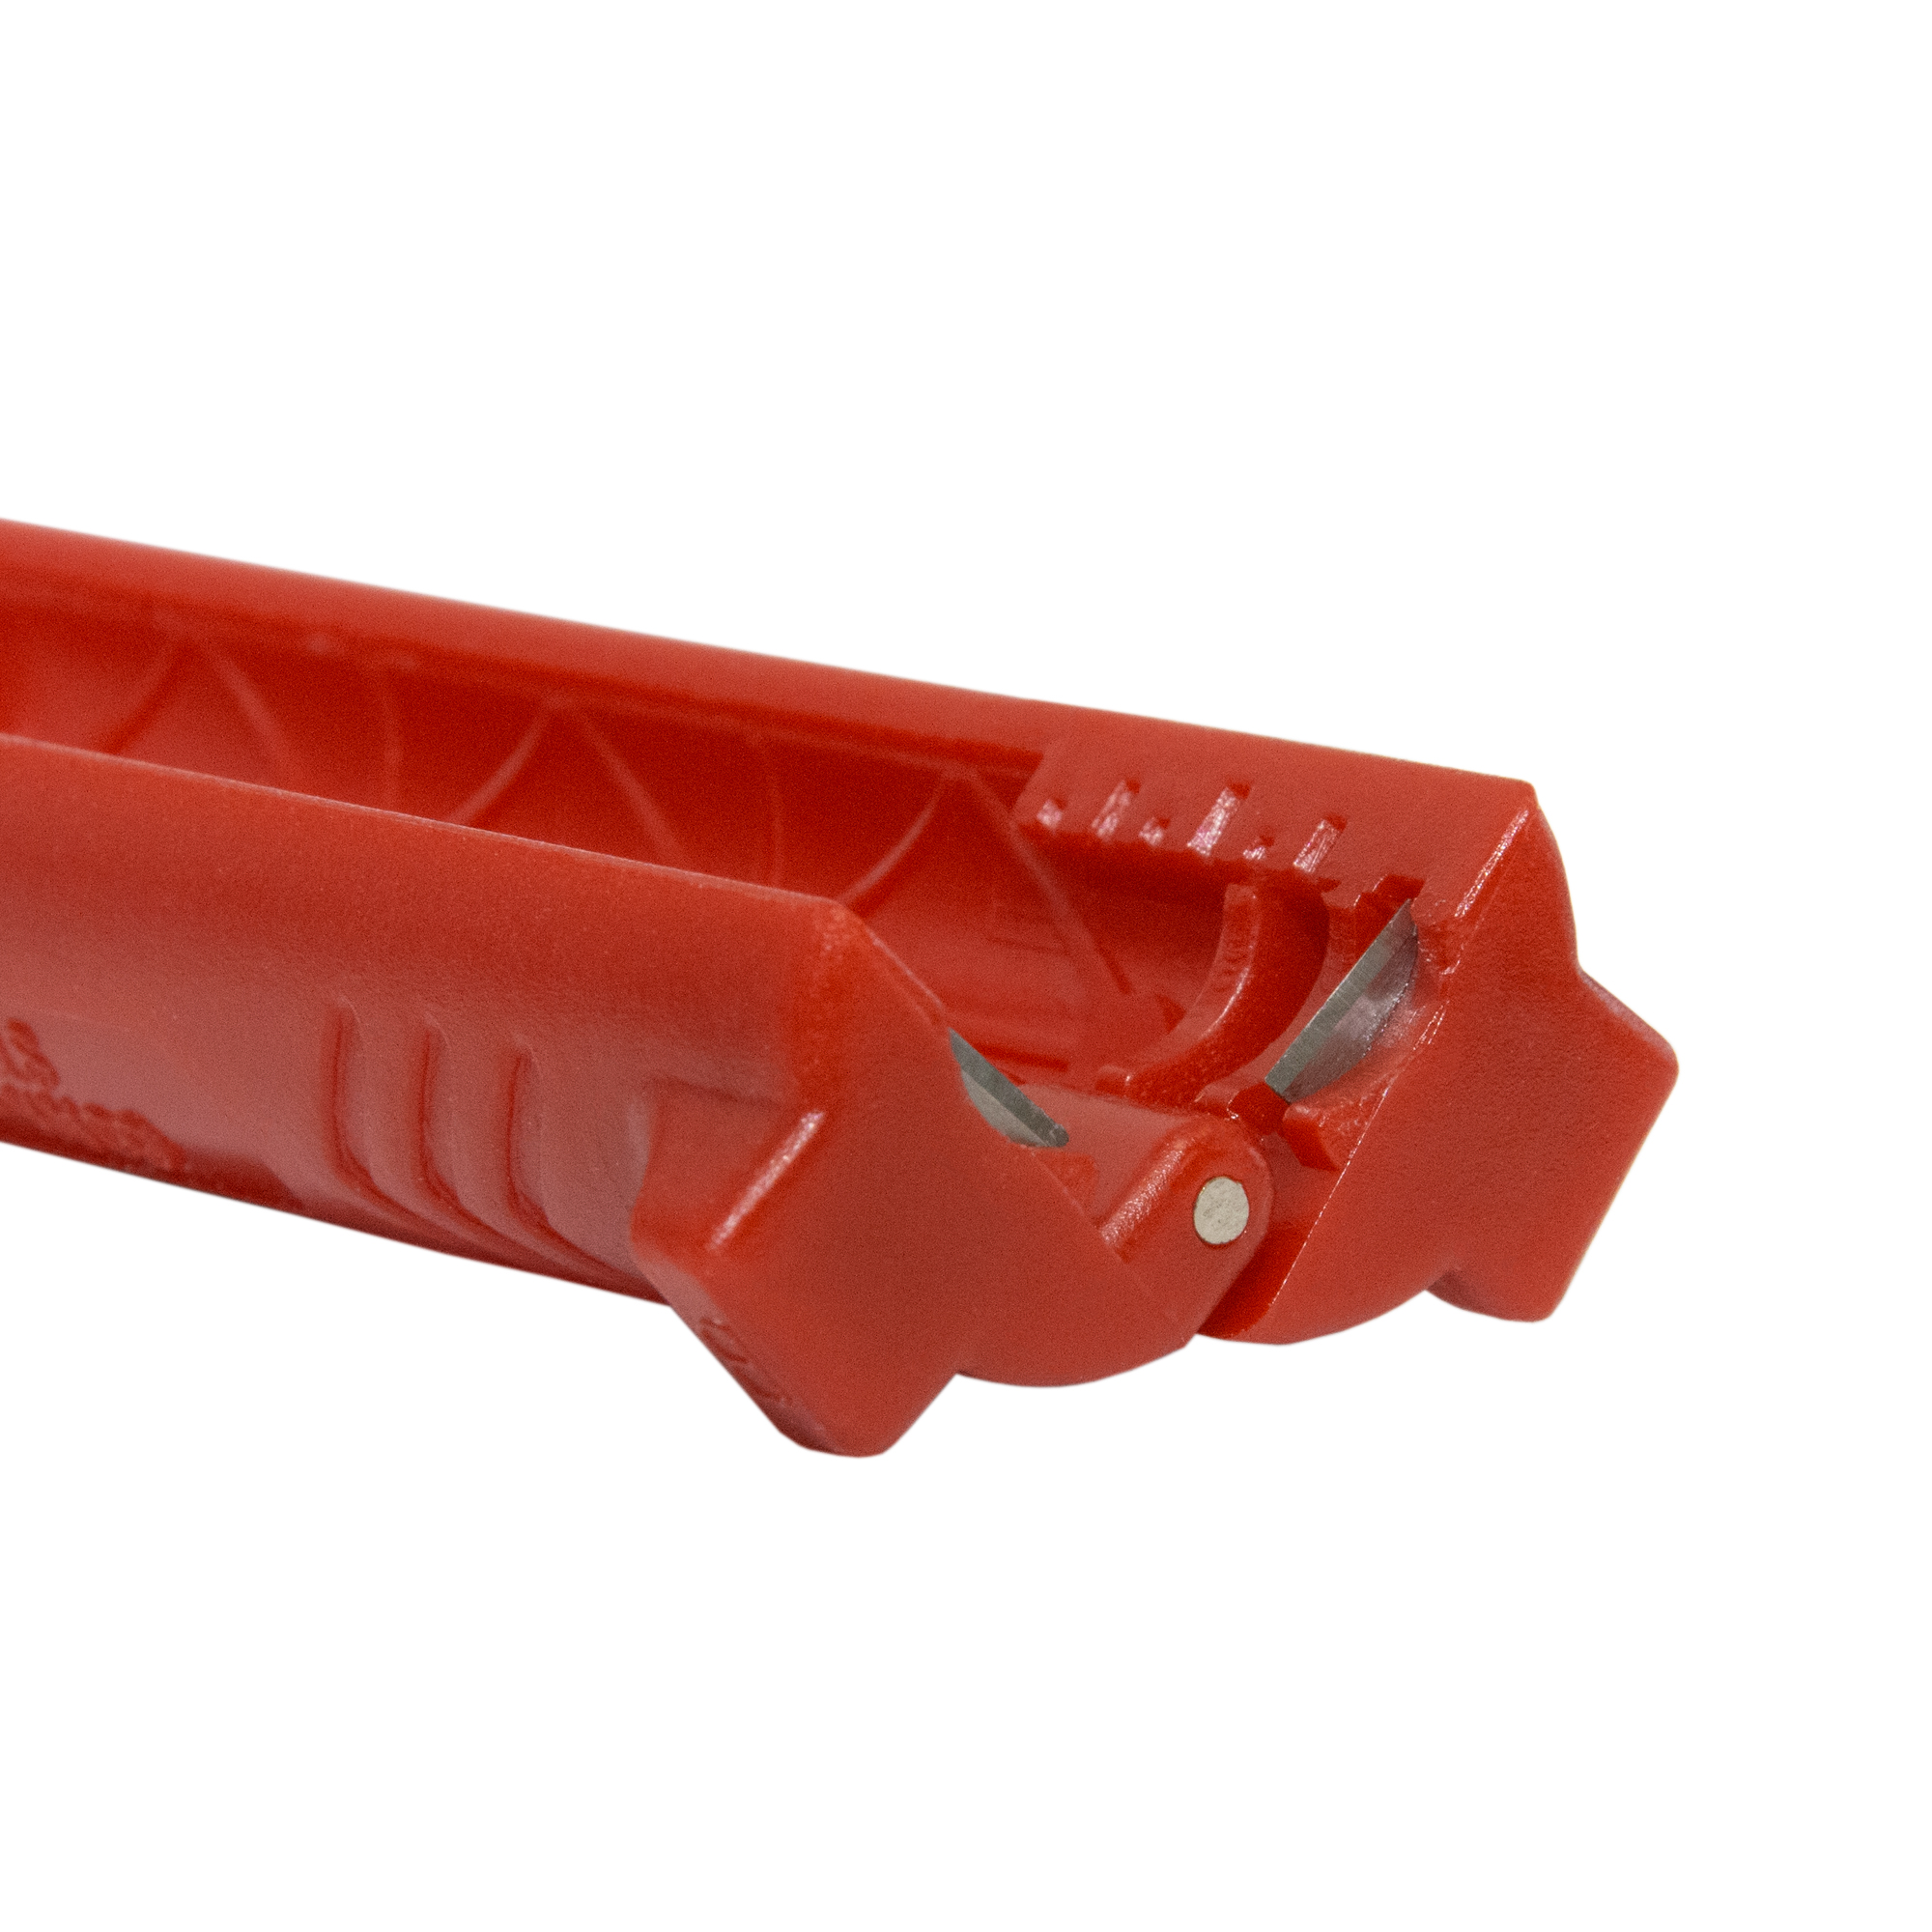 CS-10 Abisolierwerkzeug, Rot PREMIUMX Abisolierer Universal Abisolierwerkzeug XCon für Koaxialkabel